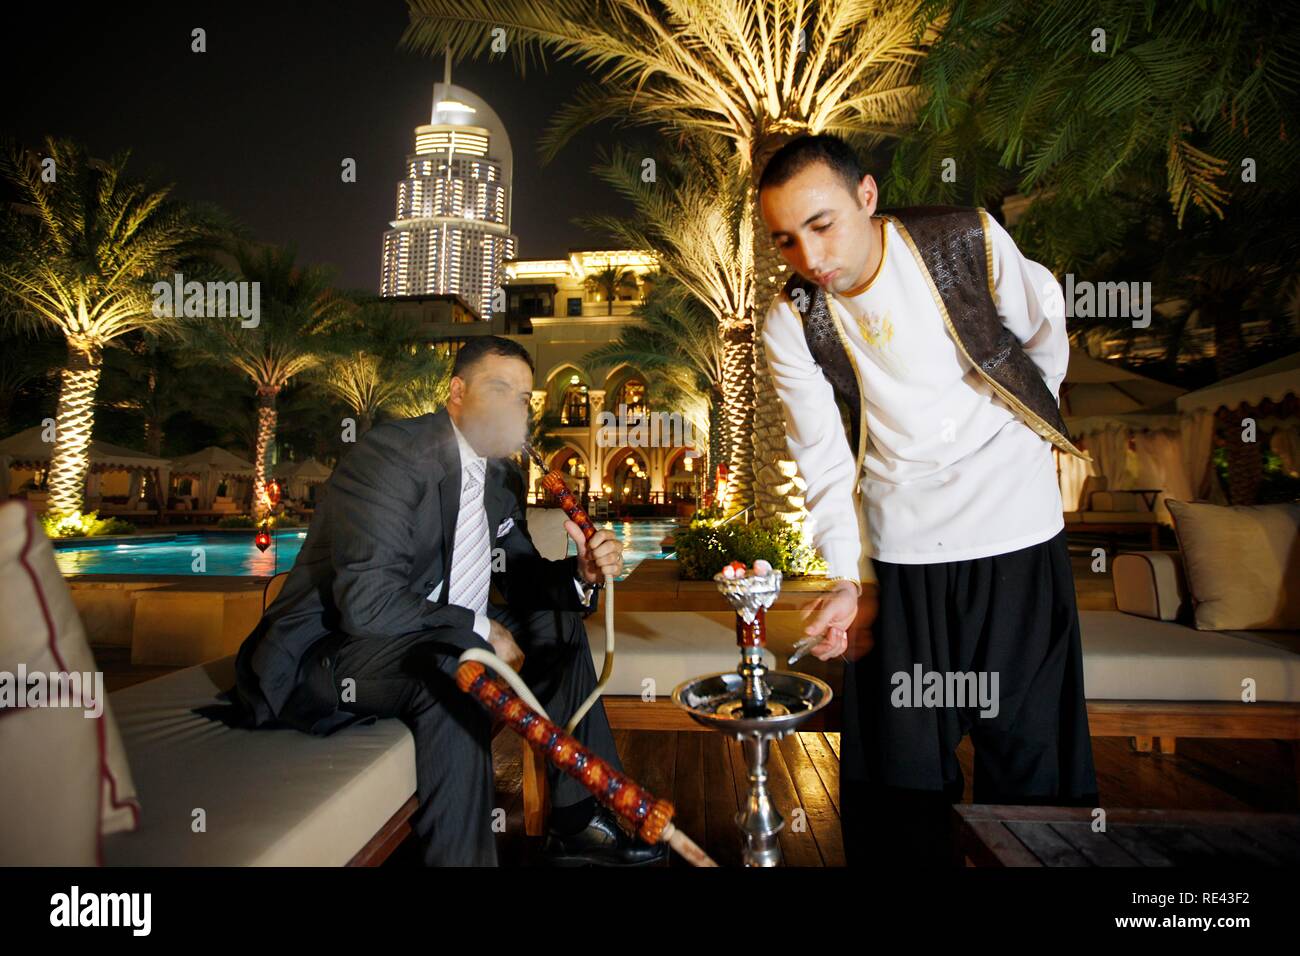 Mann Rauchen einer Wasserpfeife, Shisha, am Pool am Abend, das Palace Hotel, Altstadt, Dubai, Vereinigte Arabische Emirate, Naher Osten Stockfoto